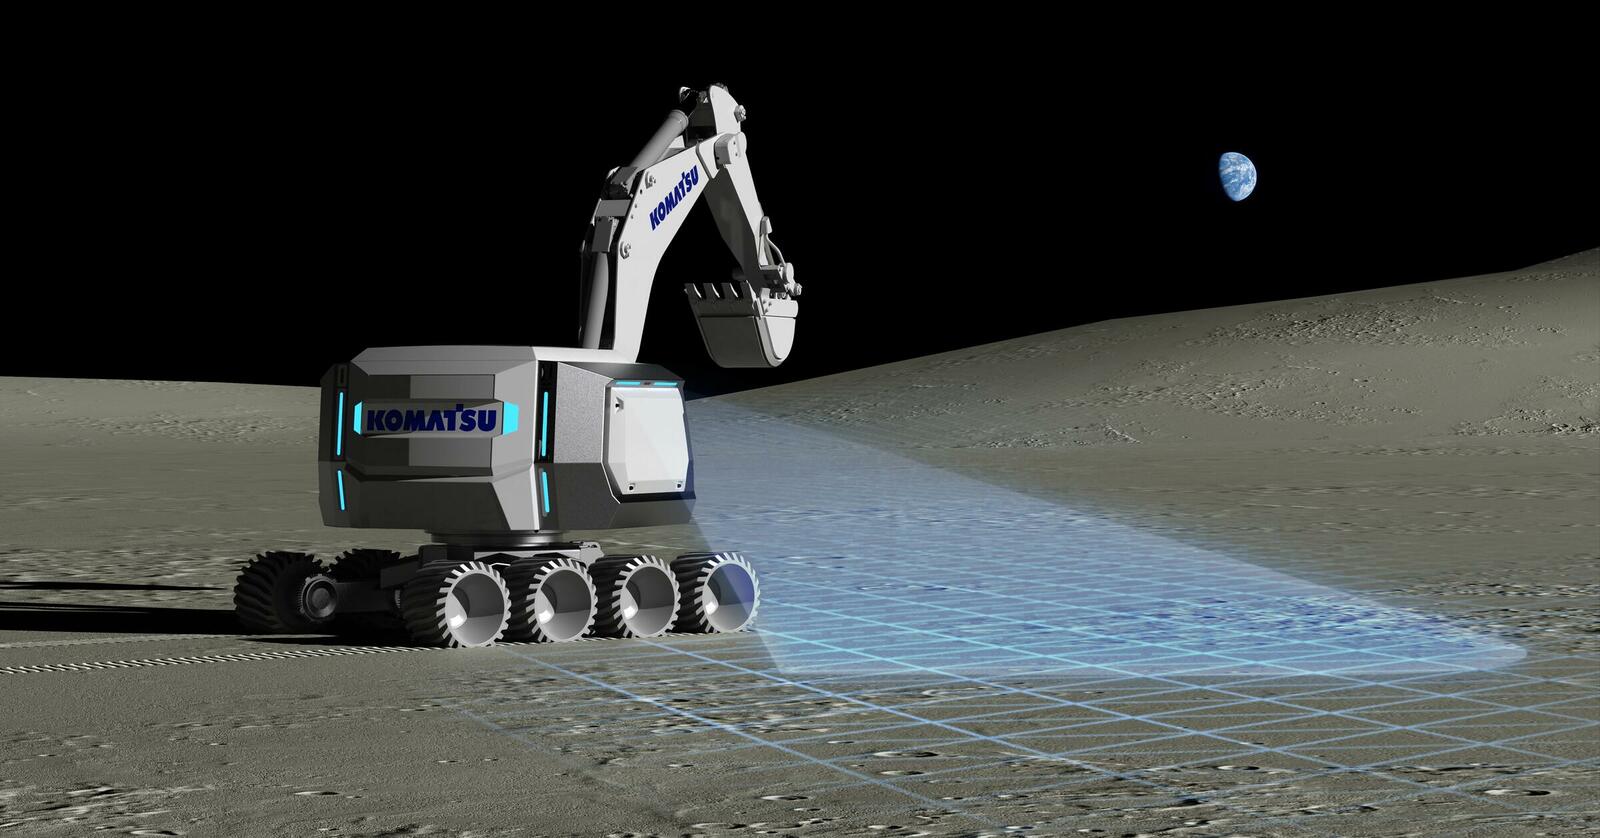 Konkret entwickelt Komatsu einen digitalen Hydraulikbagger im Weltraum und vergleicht dessen Bewegungen mit denen von Baumaschinen auf der Erde, um zu prüfen, wie präzise die Simulation ist. 